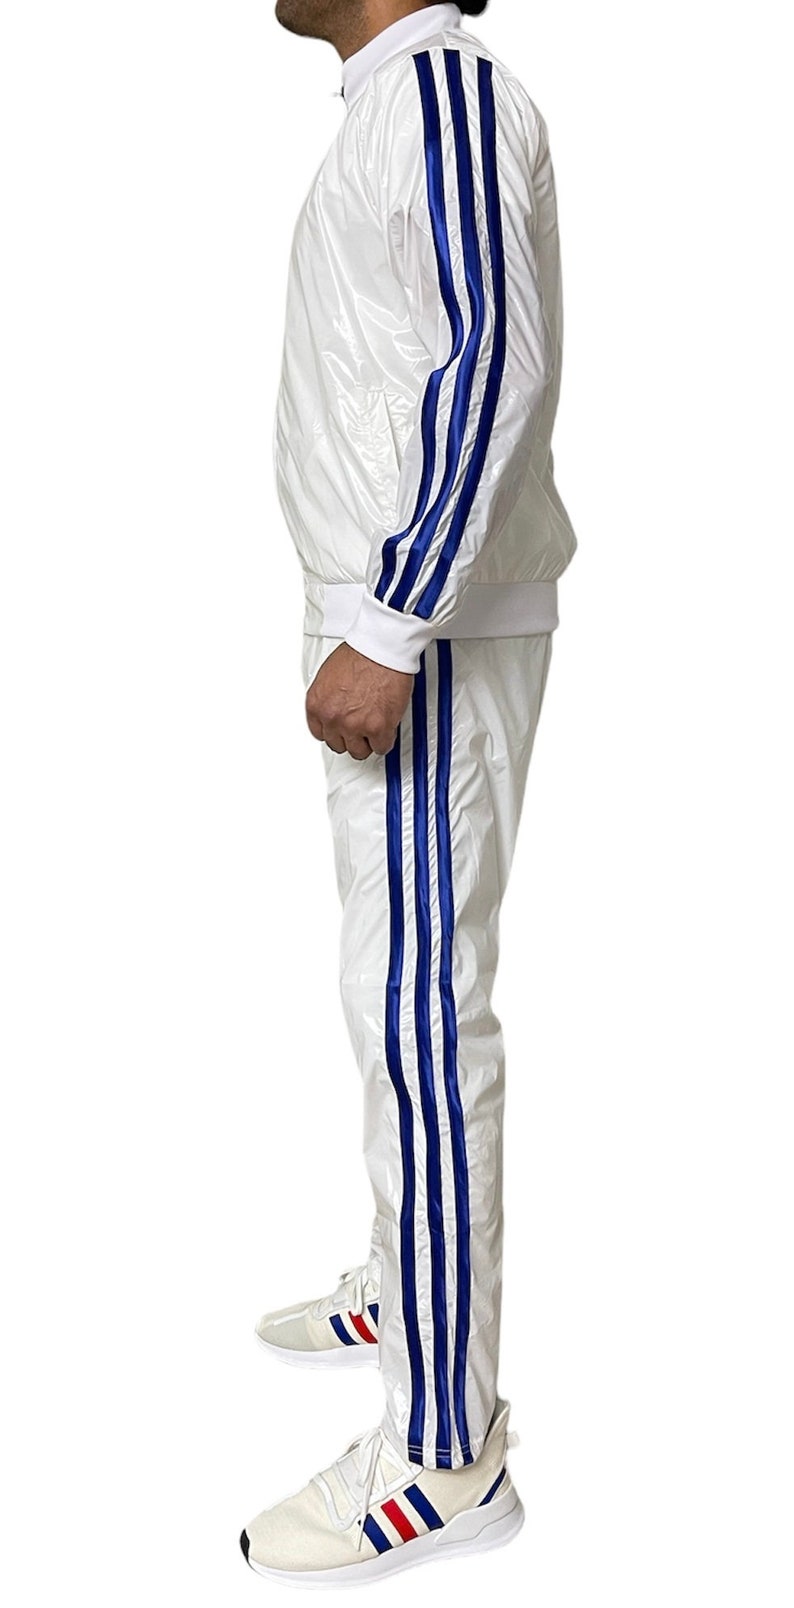 Vêtements de sport éblouissants: libérez votre brillance avec la combinaison de jogging ultime en nylon PU transparent en blanc/bleu image 5